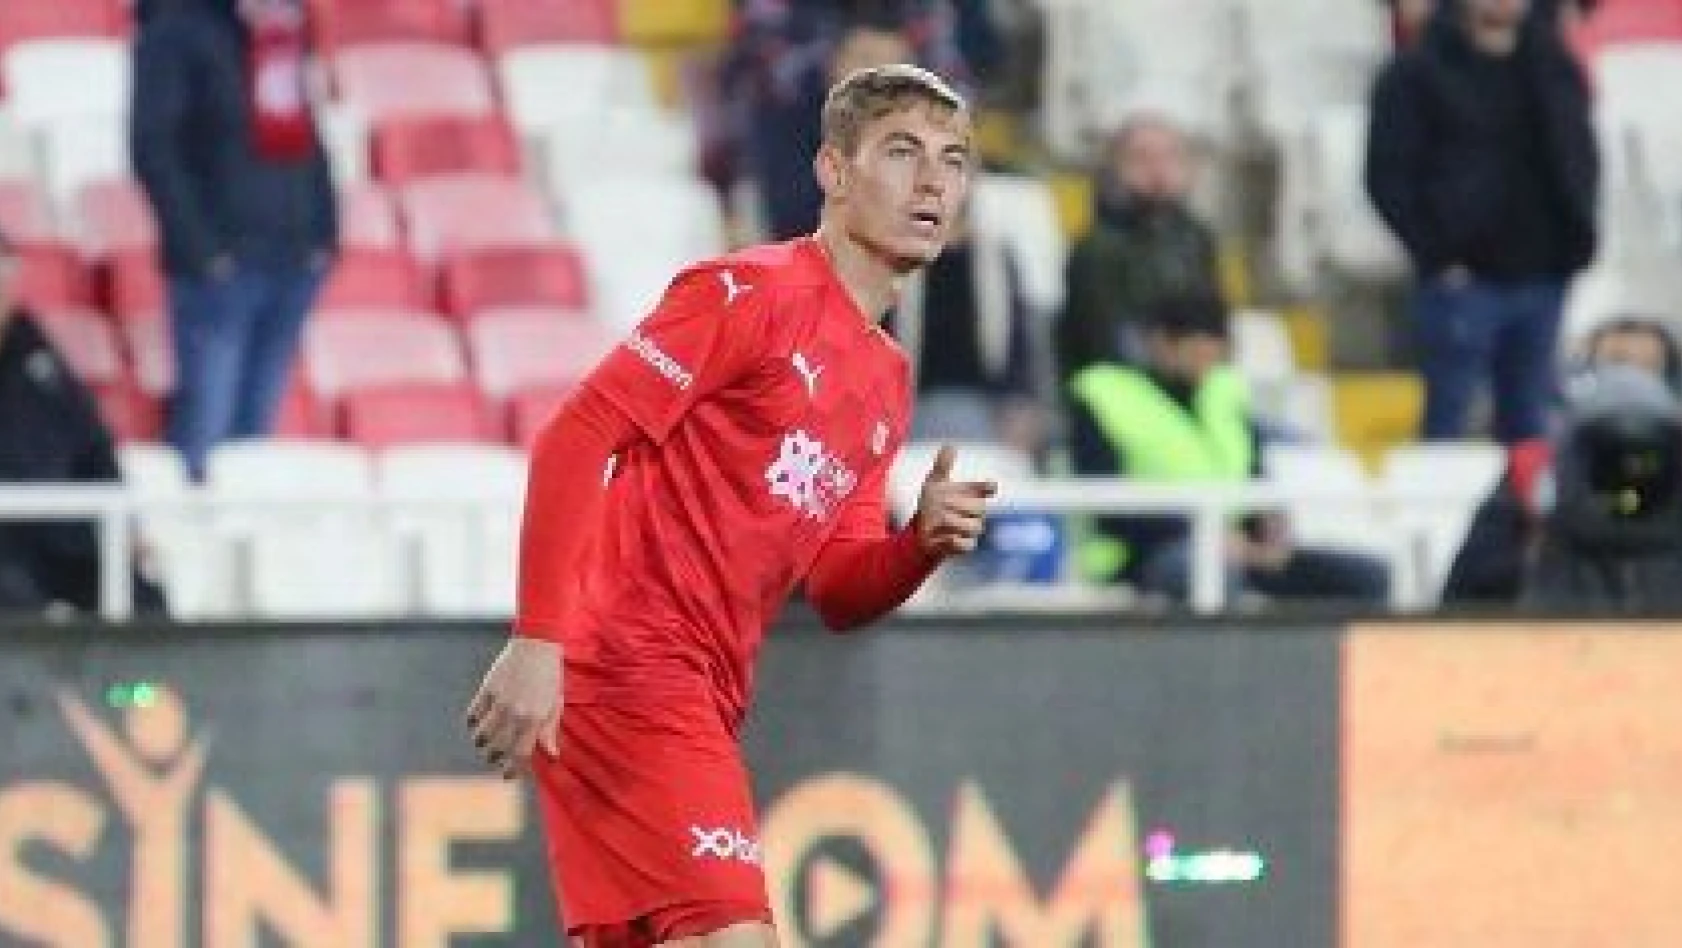 Kayseri'den yetişen Muhammed, Sivasspor'da ilk resmi maçına çıktı